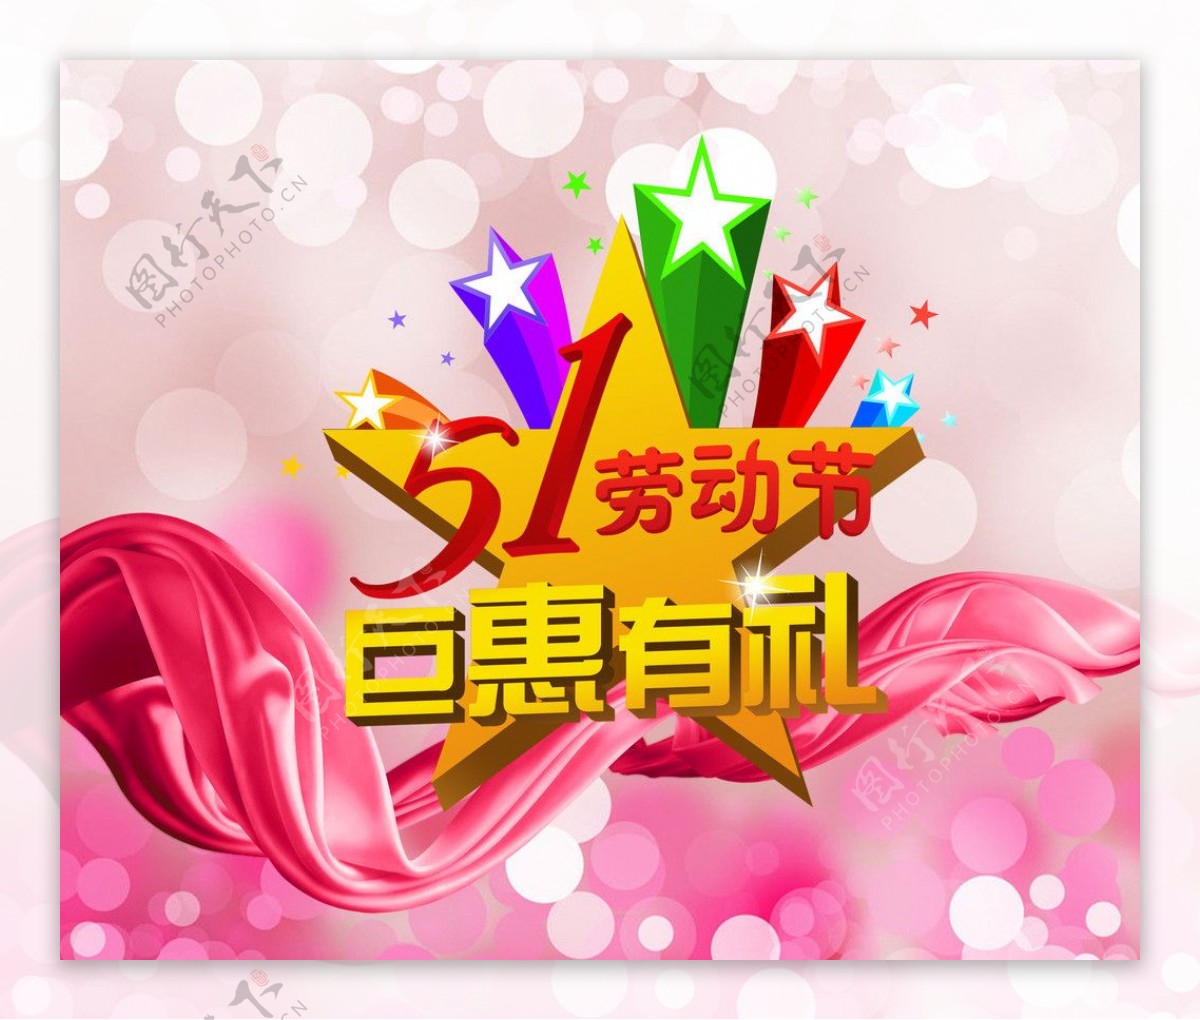 51劳动节logo图片